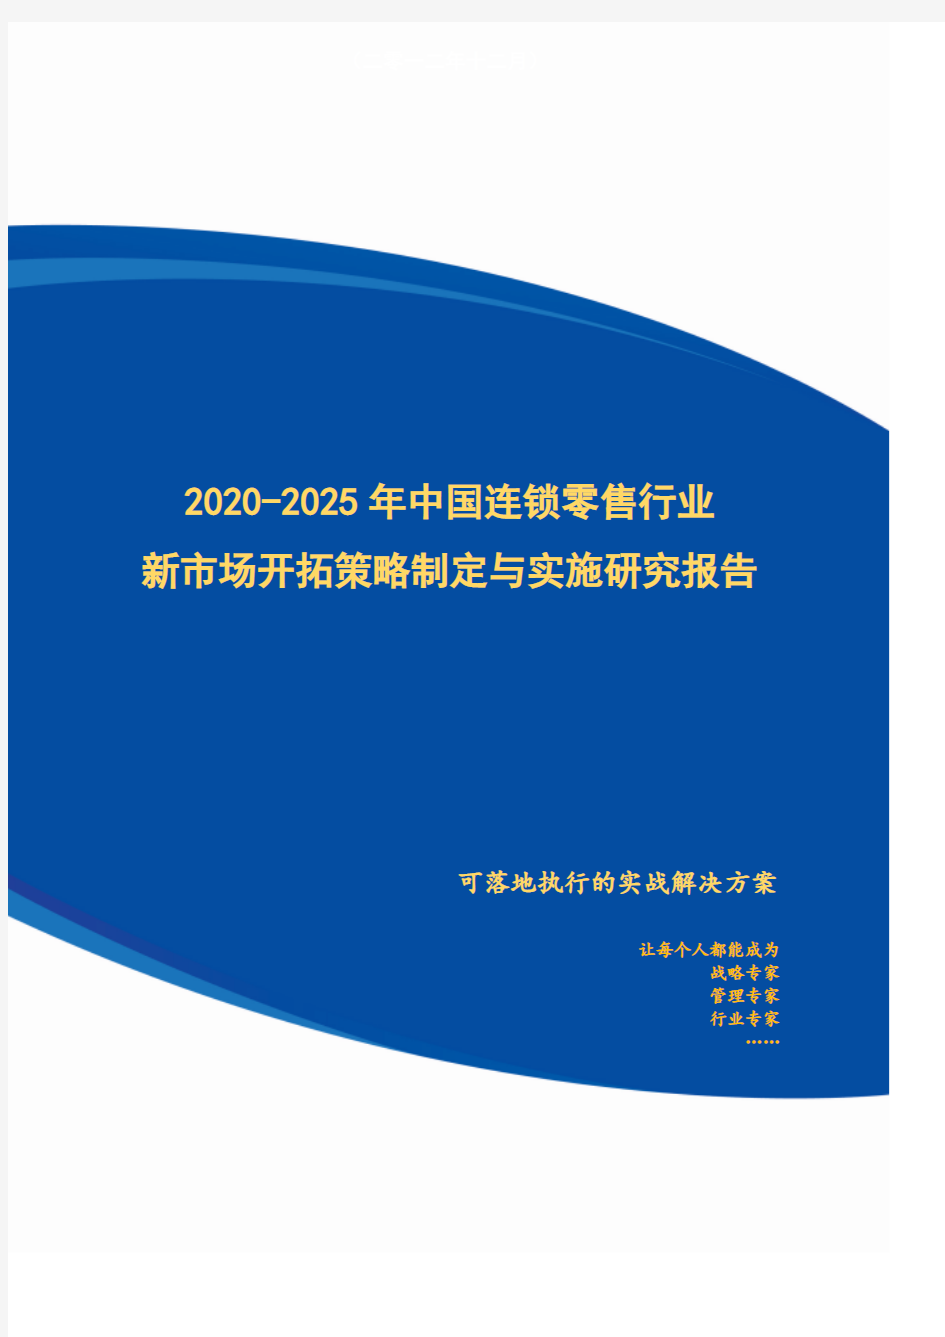 2020-2025年中国连锁零售行业新市场开拓策略制定与实施研究报告